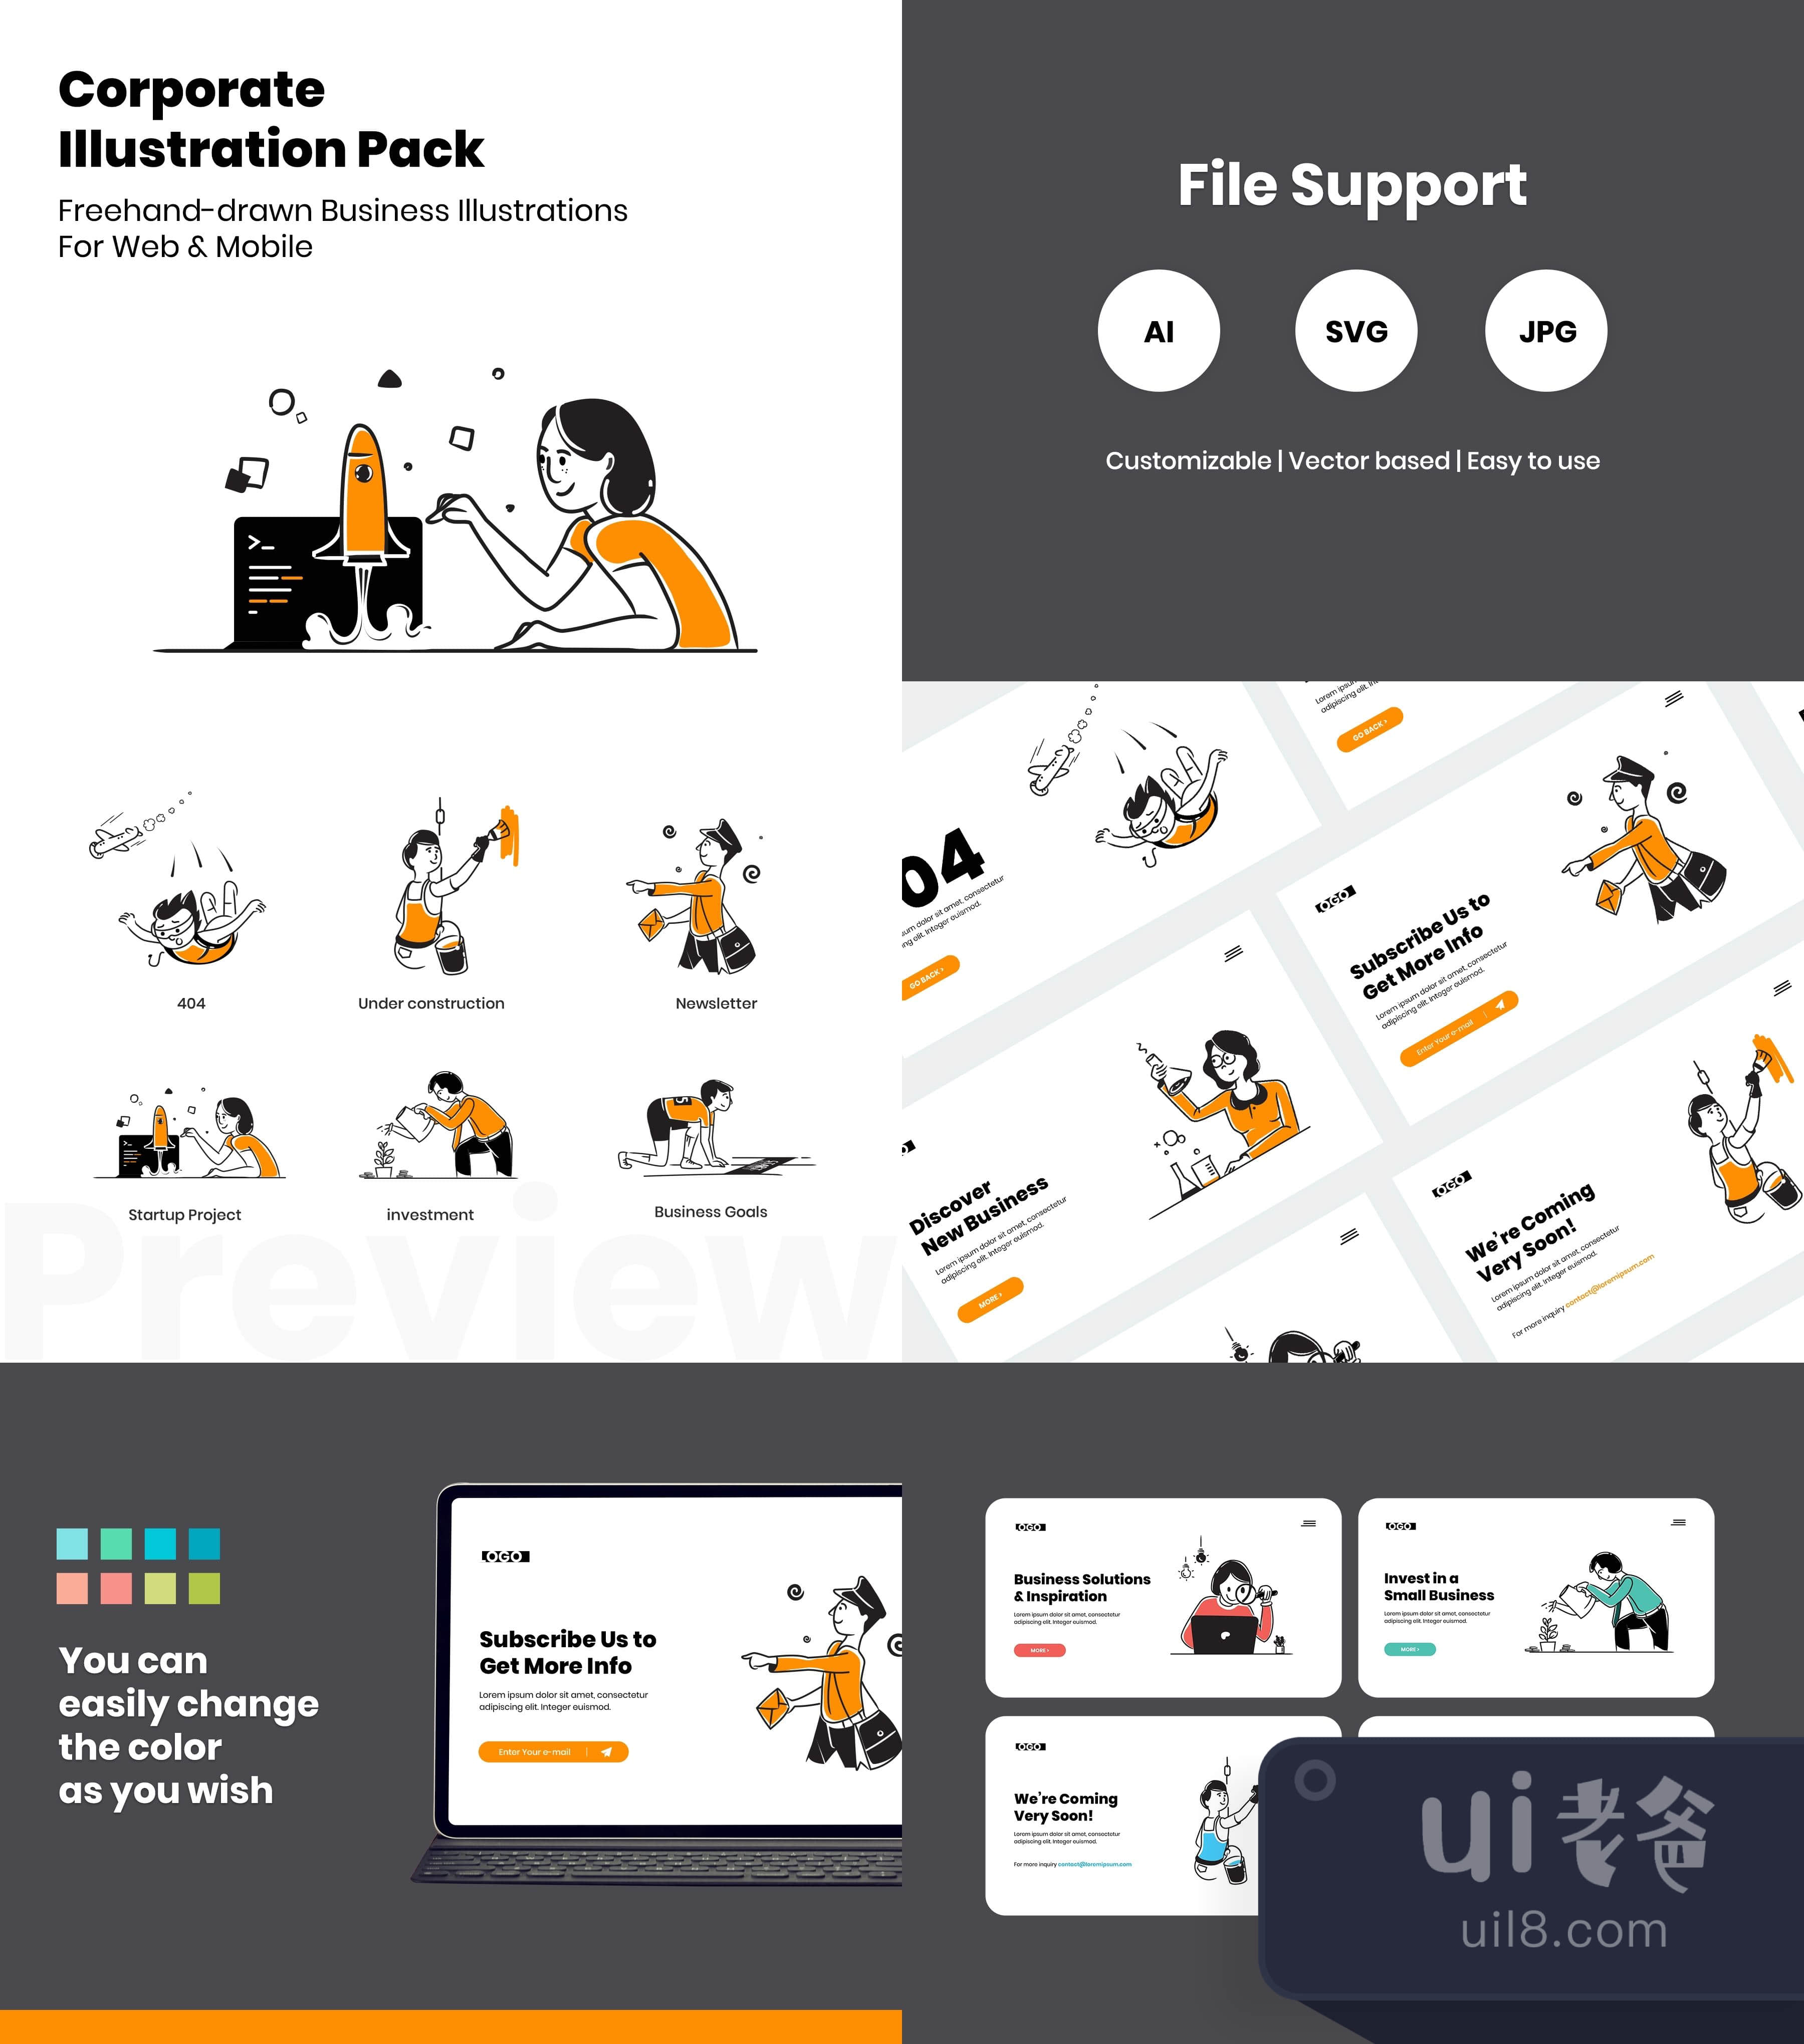 企业插图包 (Corporate Illustration Pack)插图1